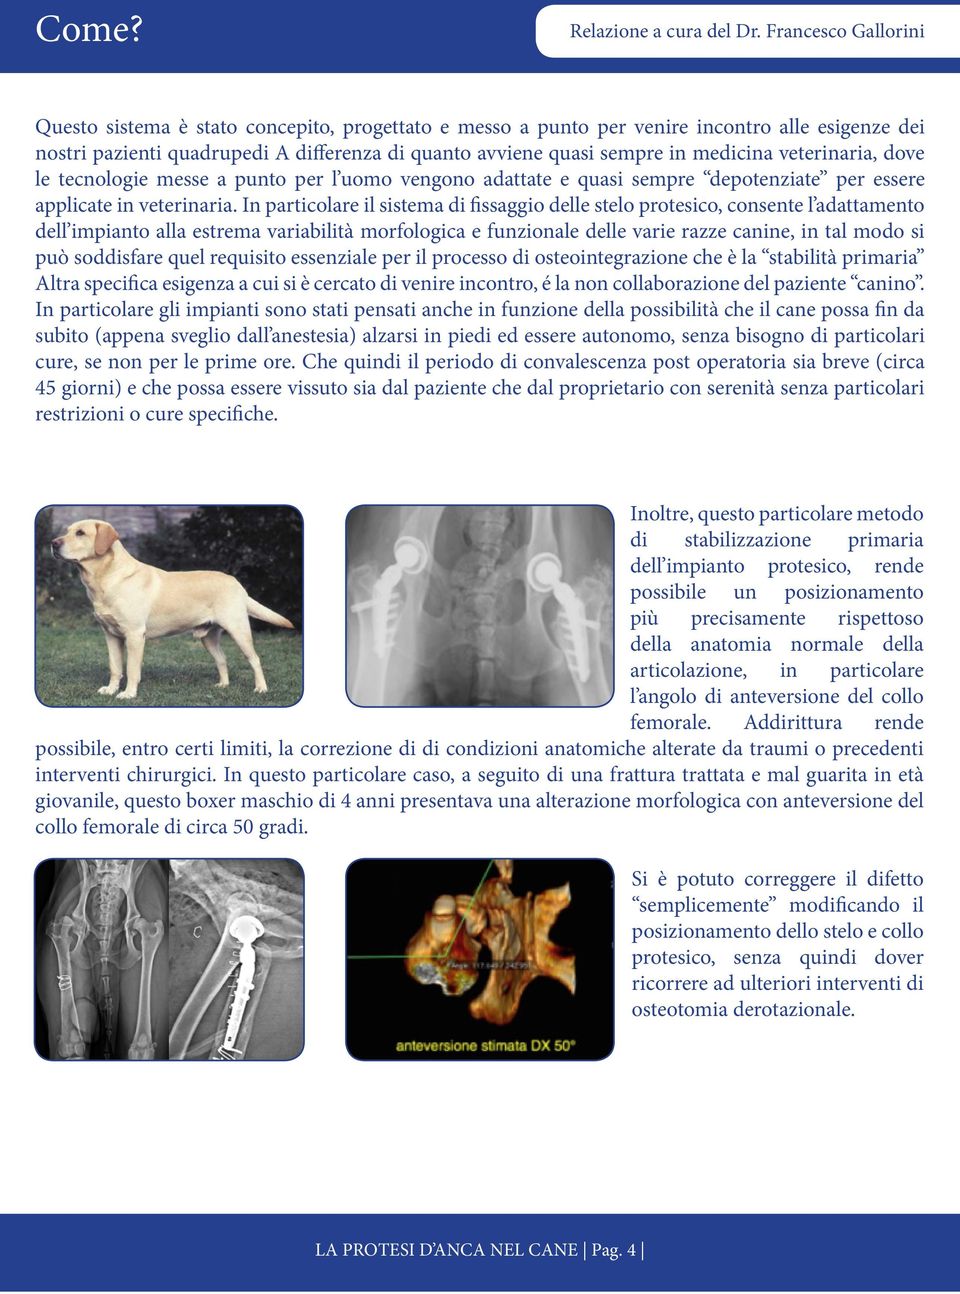 In particolare il sistema di fissaggio delle stelo protesico, consente l adattamento dell impianto alla estrema variabilità morfologica e funzionale delle varie razze canine, in tal modo si può